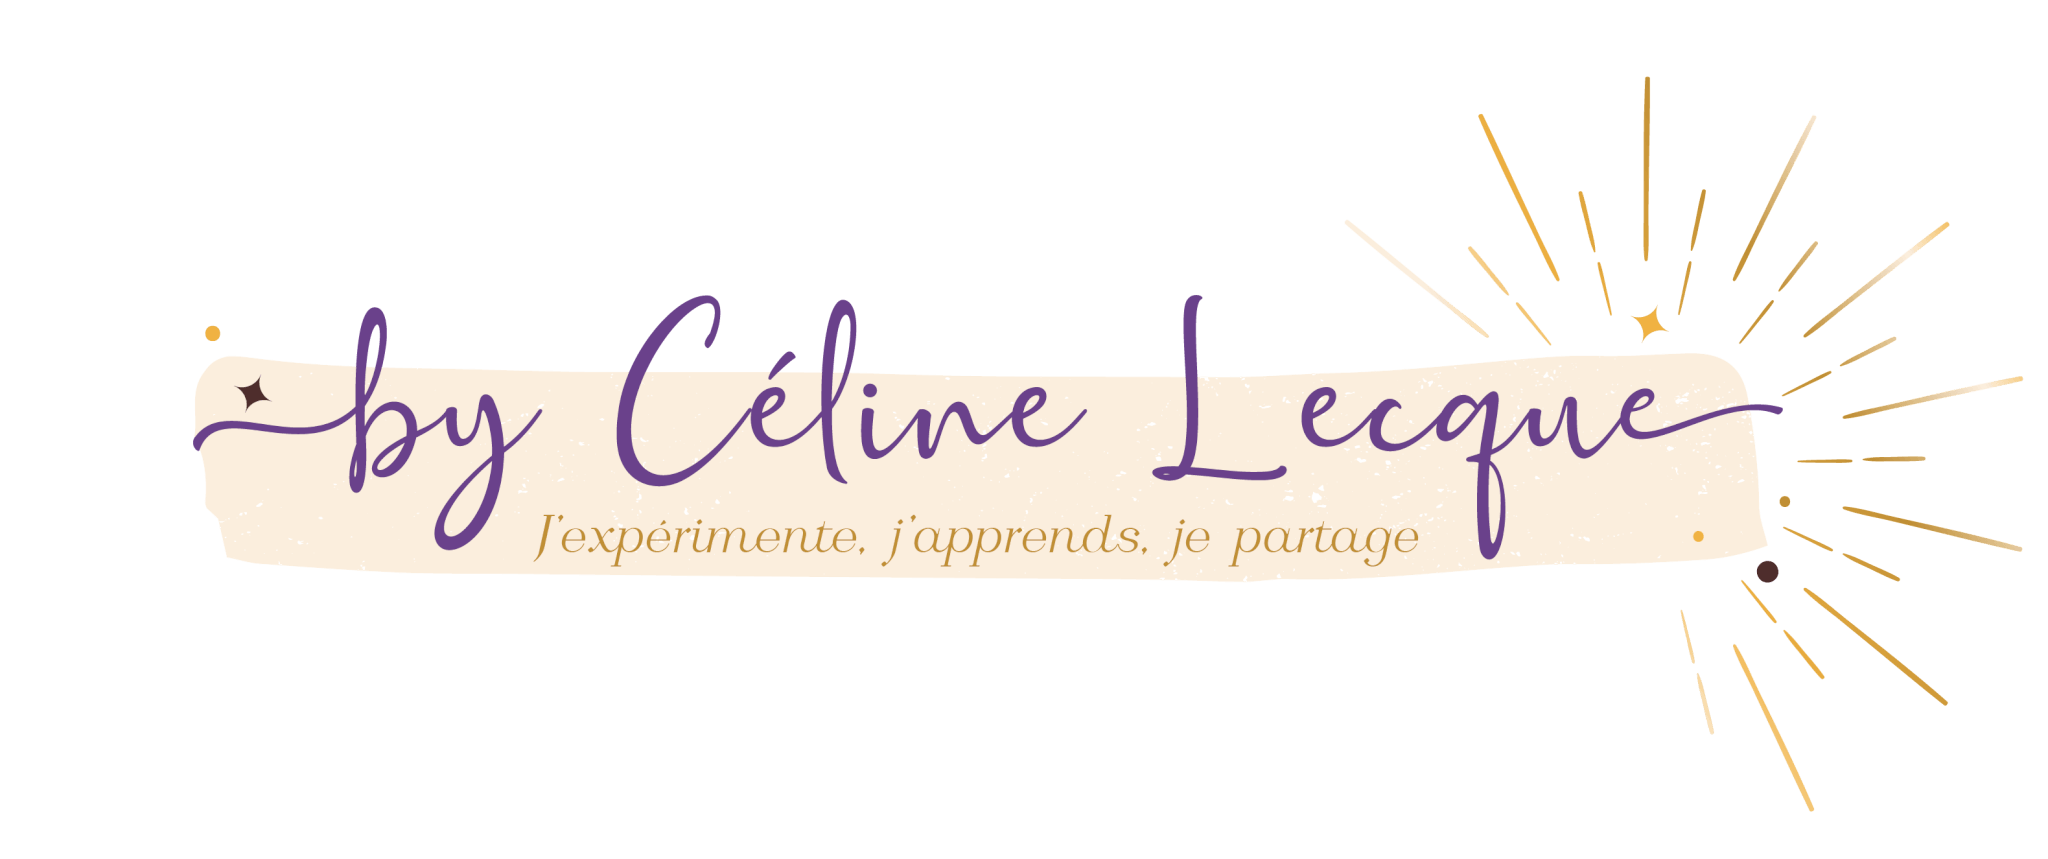 By Céline Lecque créatrice des bulletins d'âme